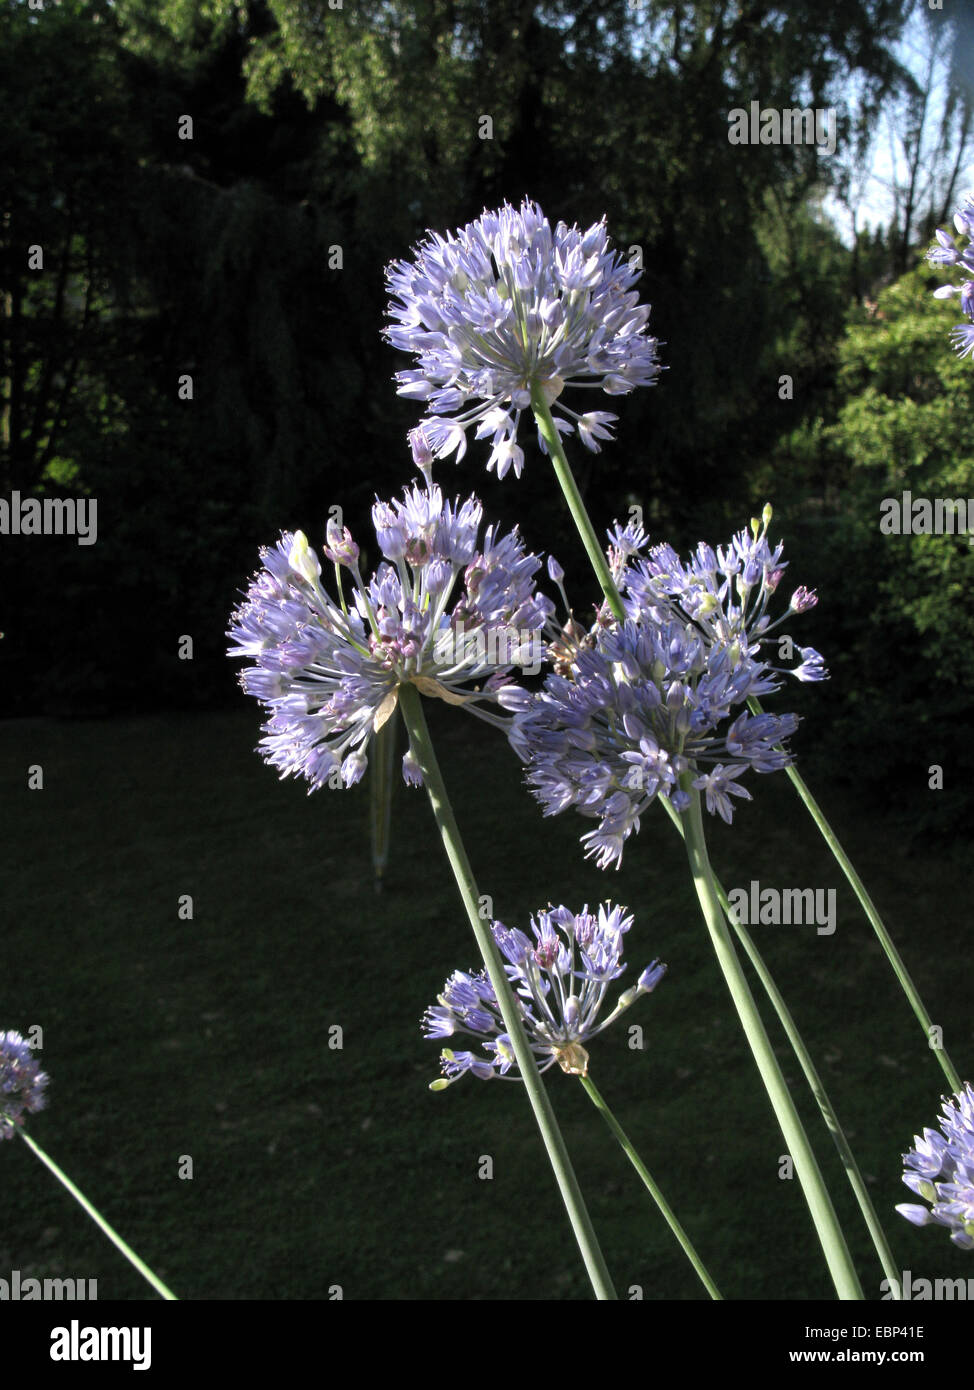 Blue Allium (Allium caeruleum), blooming Stock Photo